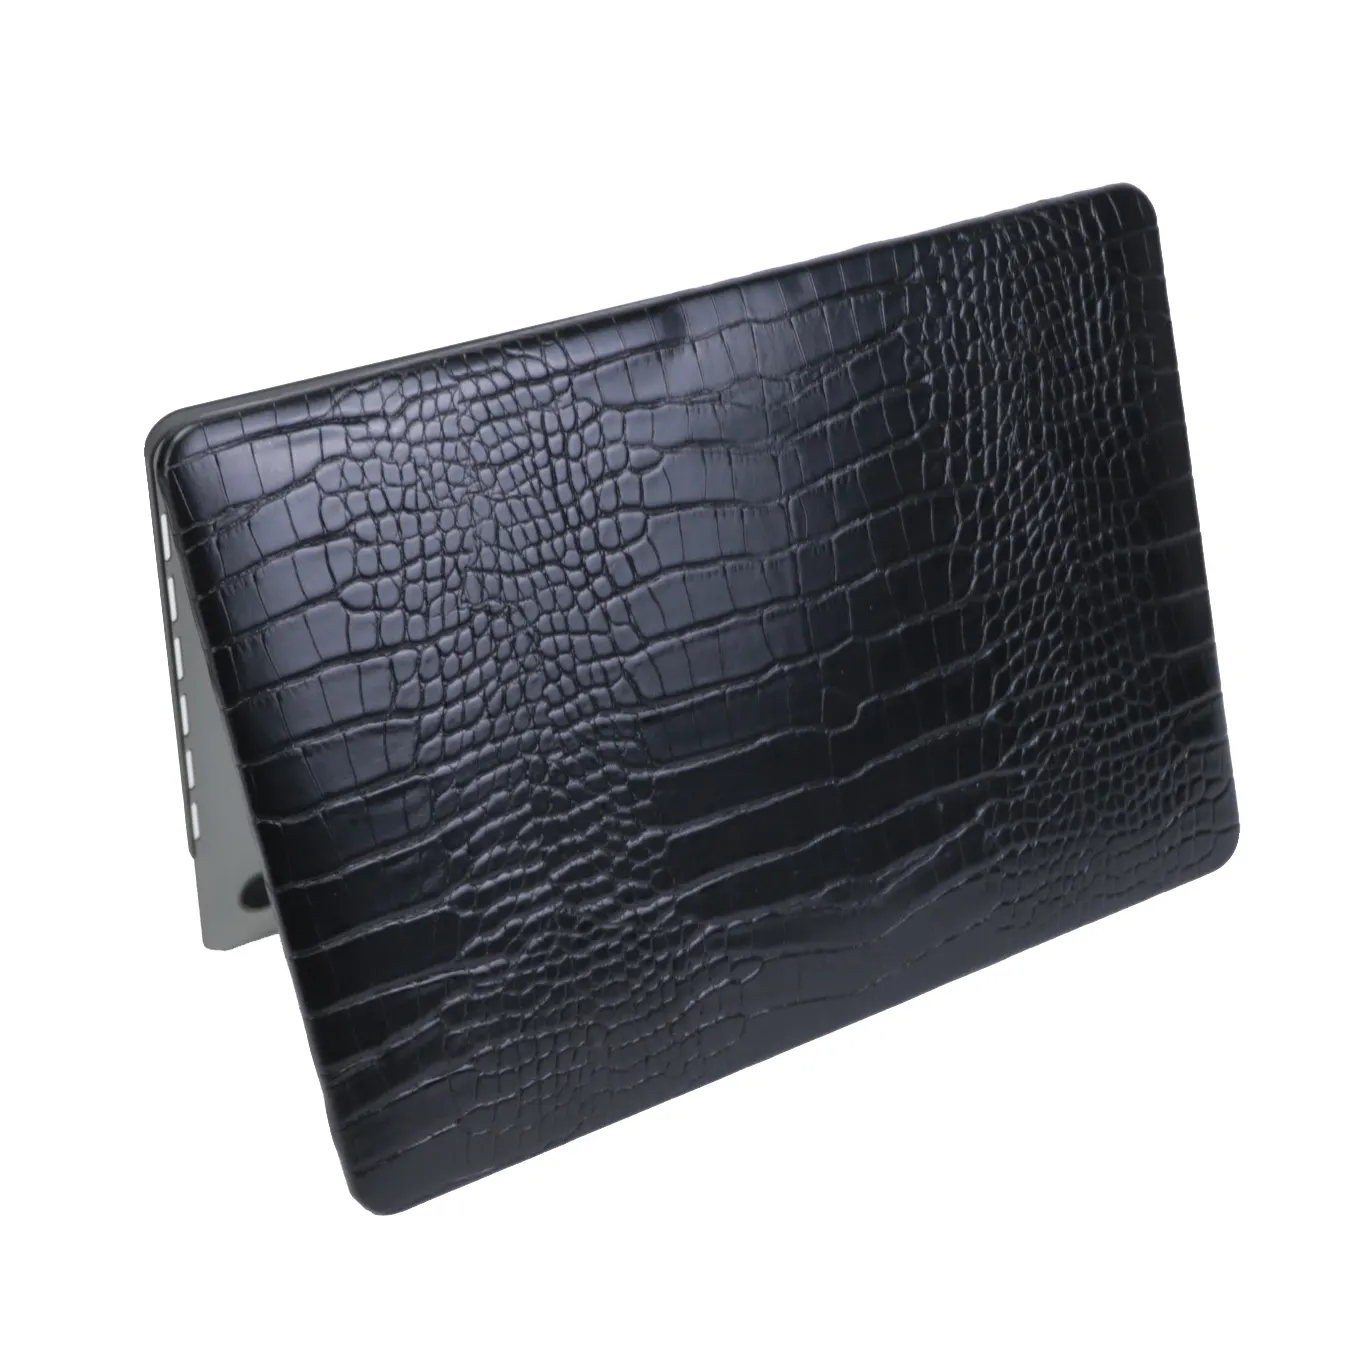 Grandbag yeni tasarım özel PU timsah kabartmalı deri sert kabuk Laptop kapakları Laptop çantası 13 inç MacBook Pro için